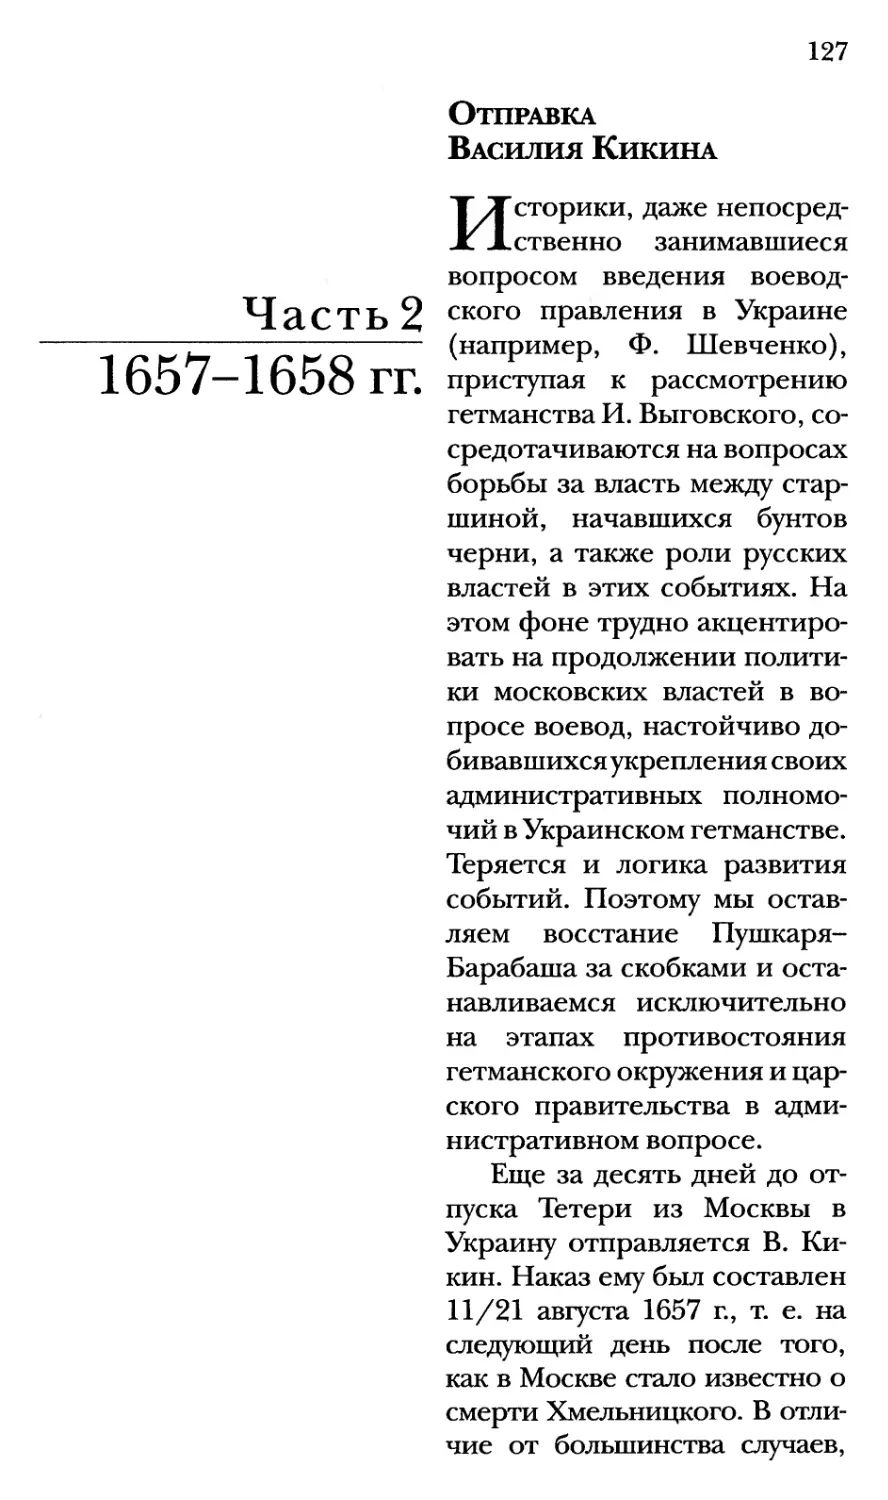 Часть 2. 1657-1658 гг.